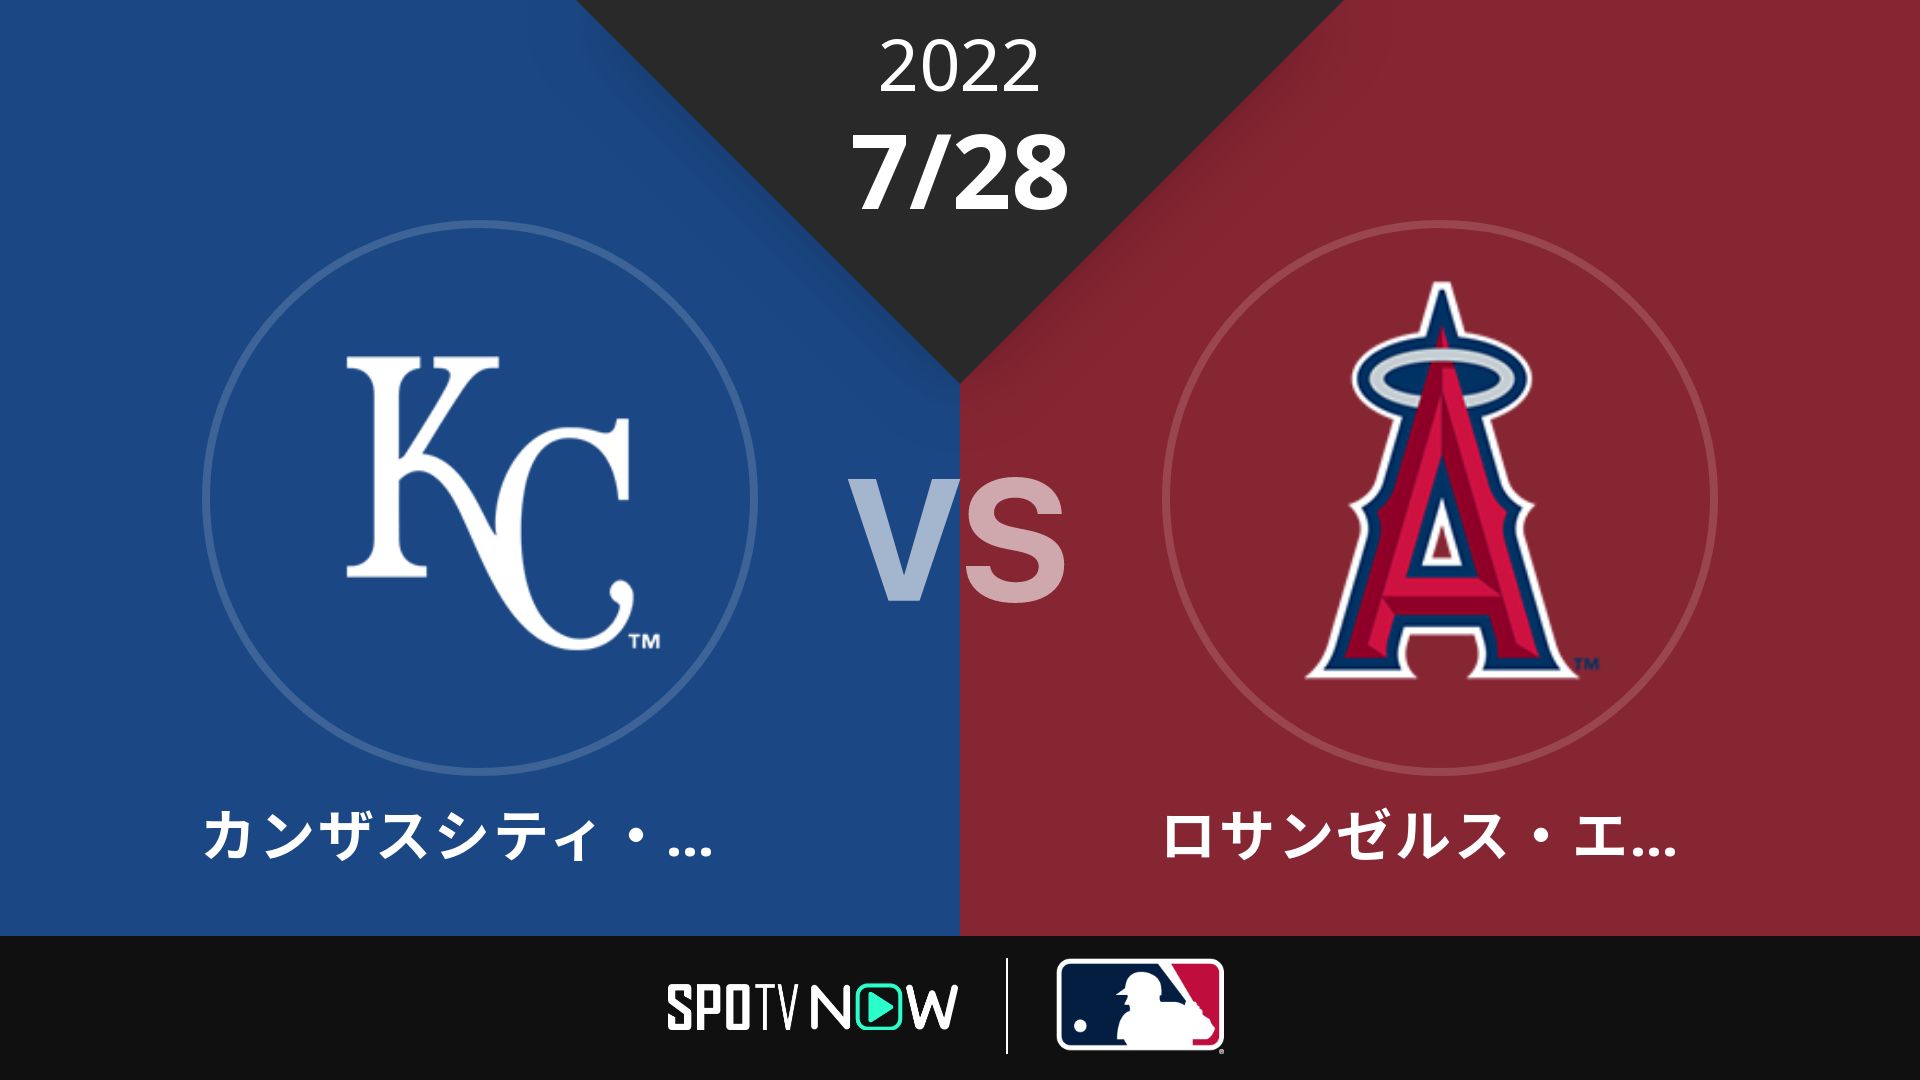 2022/7/28 ロイヤルズ vs エンゼルス [MLB]